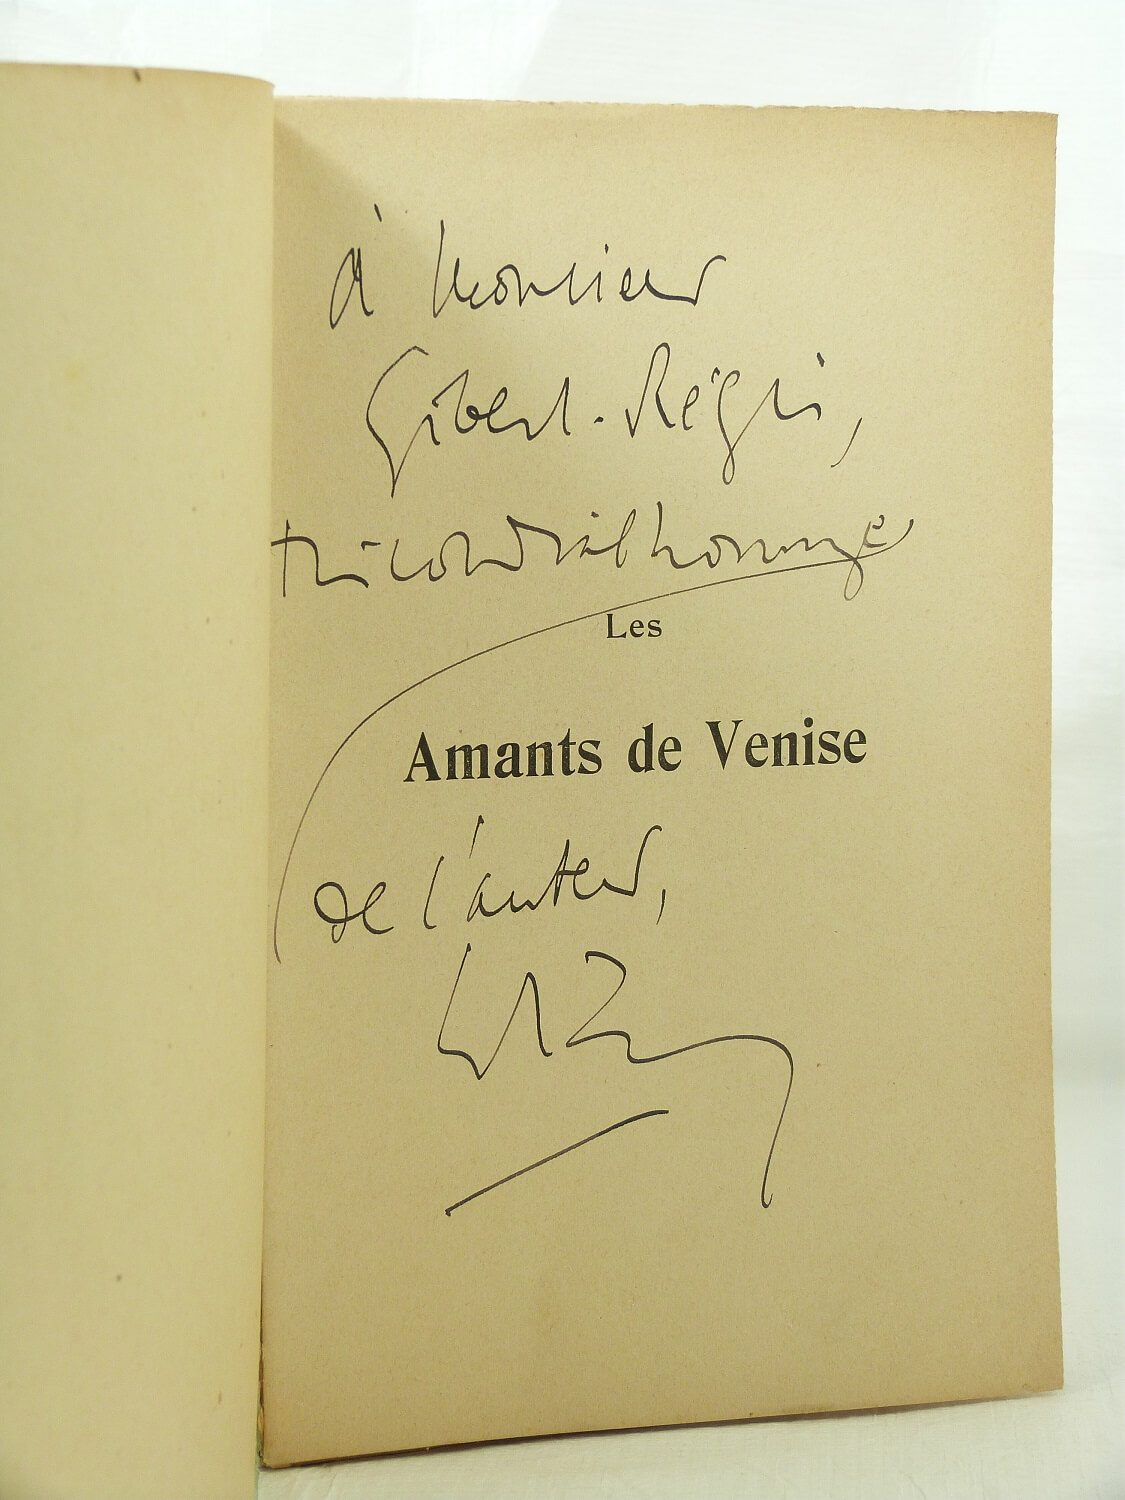 Les amants de Venise. George Sand et Musset - Librairie KOEGUI